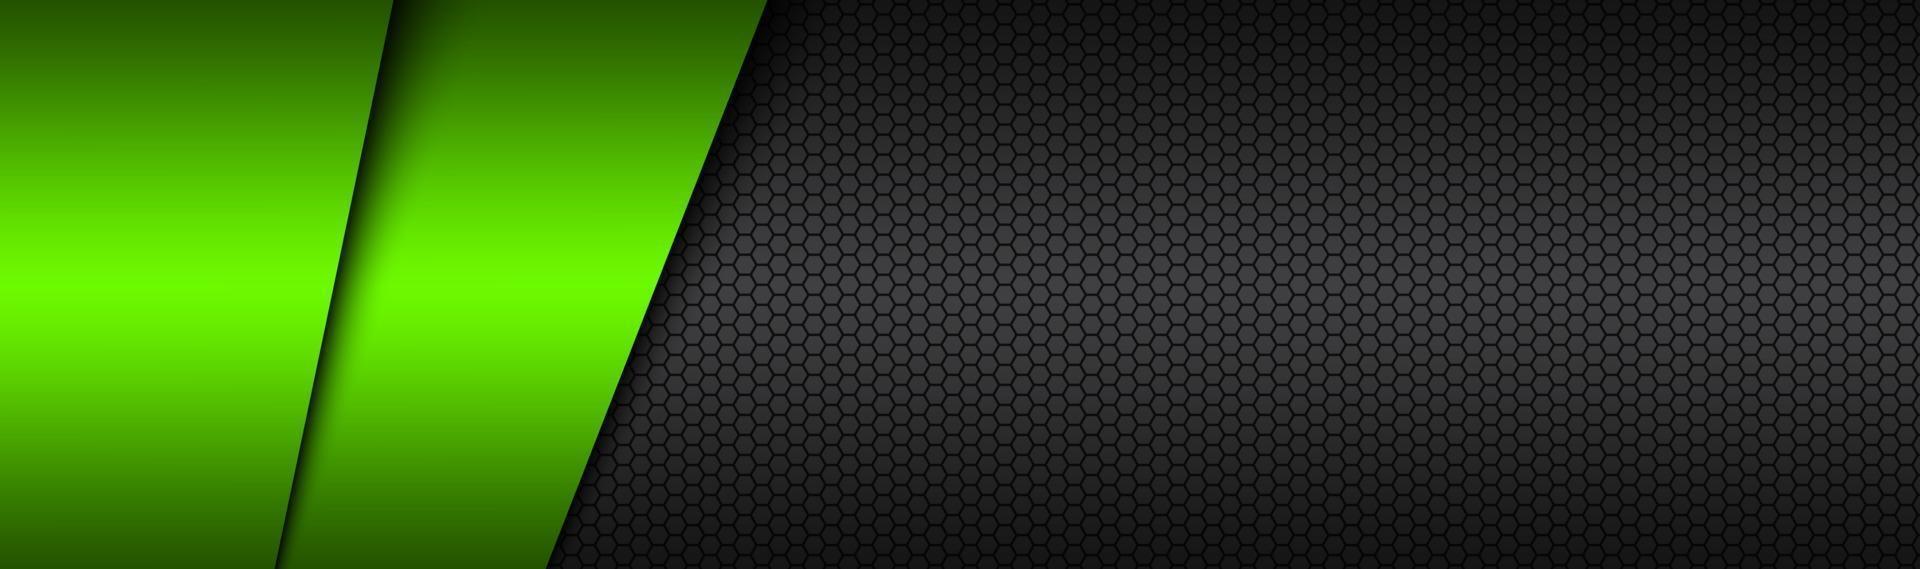 Cabeçalho de vetor de material moderno preto e verde com um banner de design de malha hexagonal com grade poligonal e espaço em branco para o design do site abstrato do seu logotipo